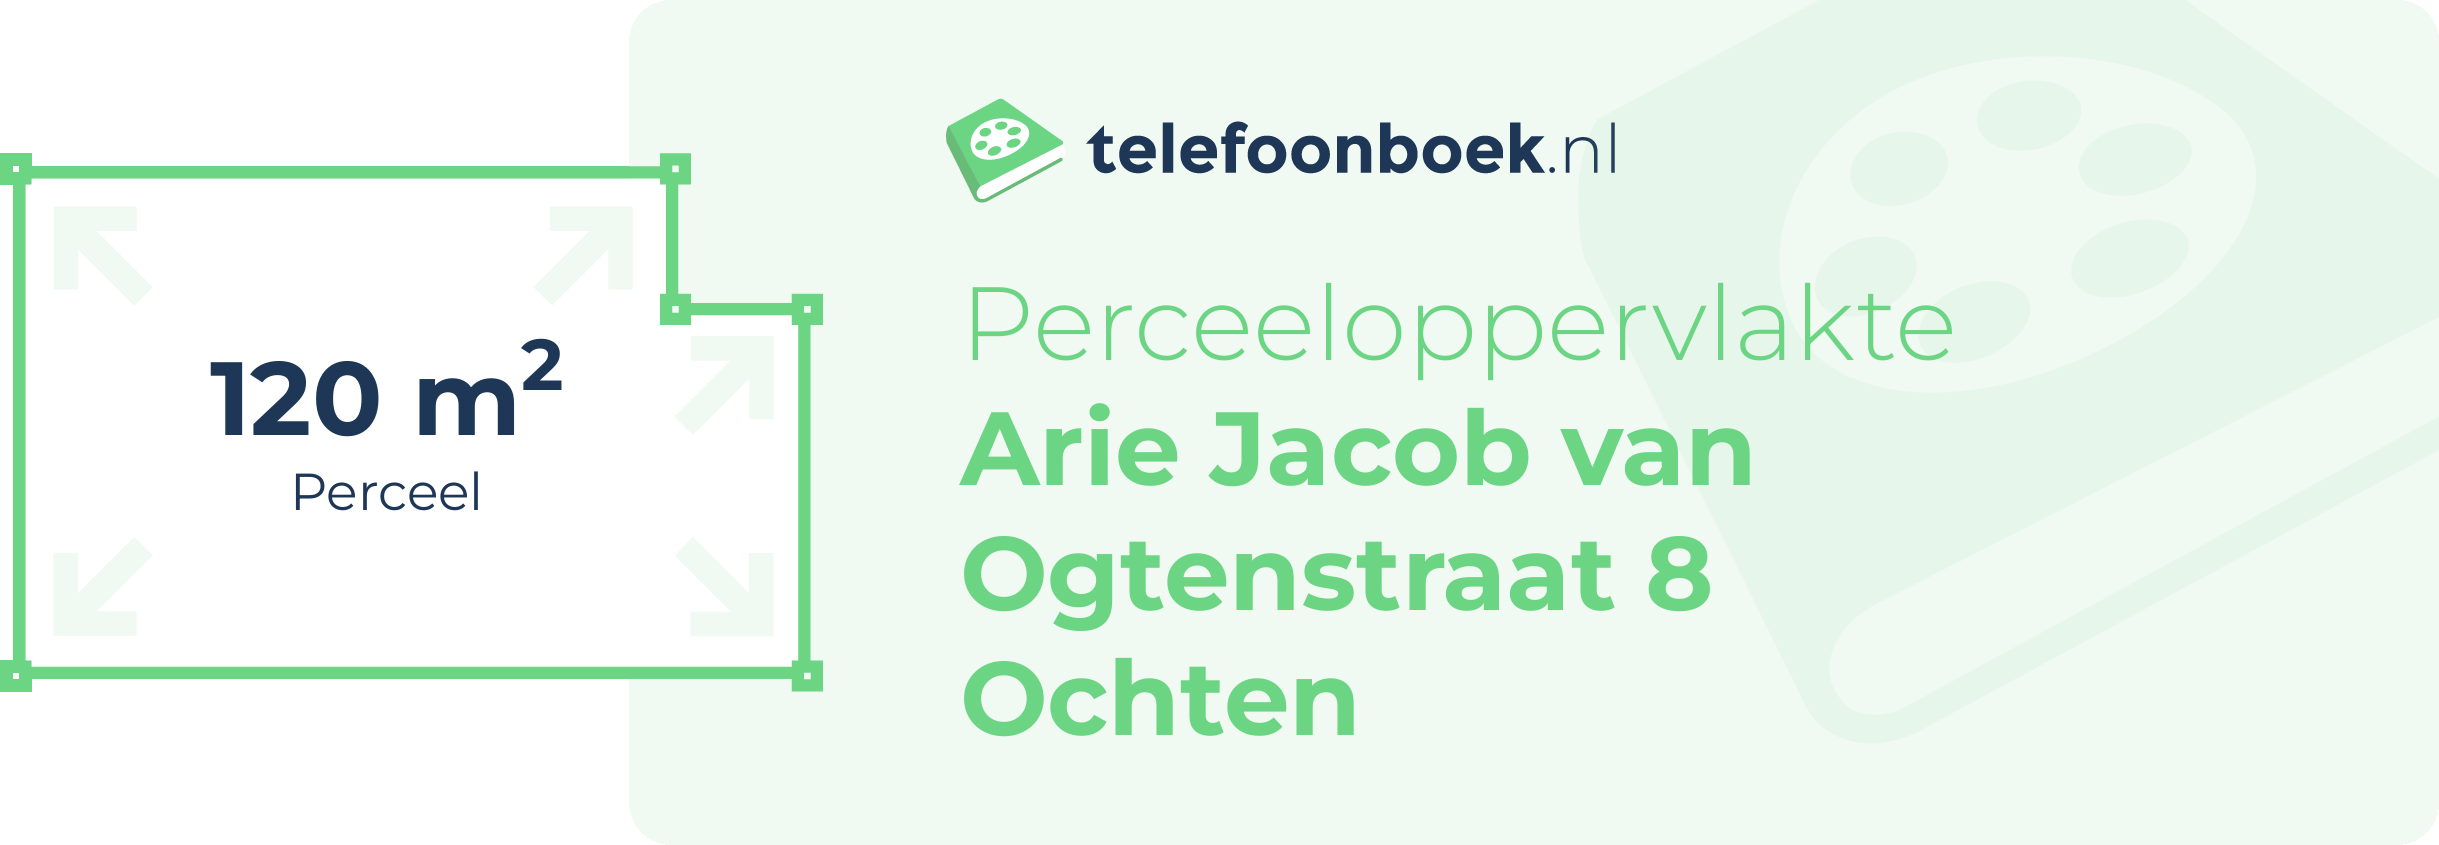 Perceeloppervlakte Arie Jacob Van Ogtenstraat 8 Ochten